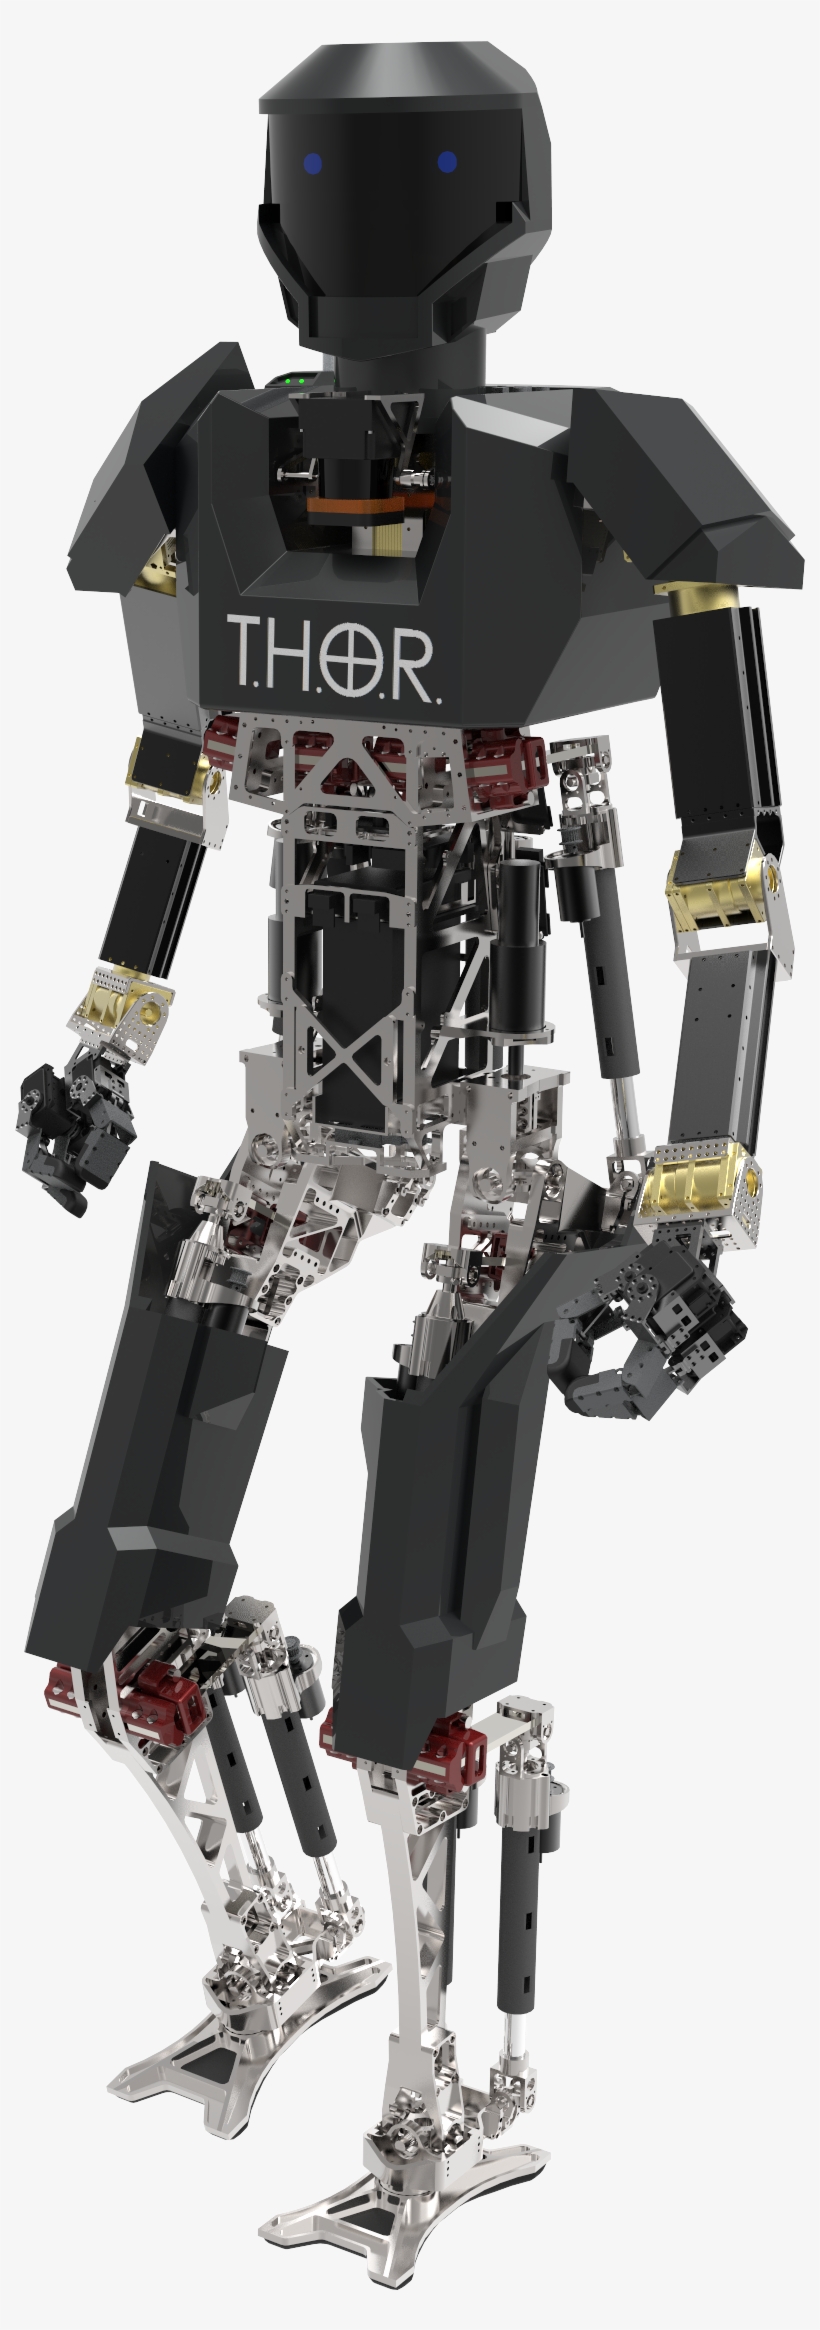 Virginia Tech's Thor Robot - Darpa Robots, transparent png #3628977